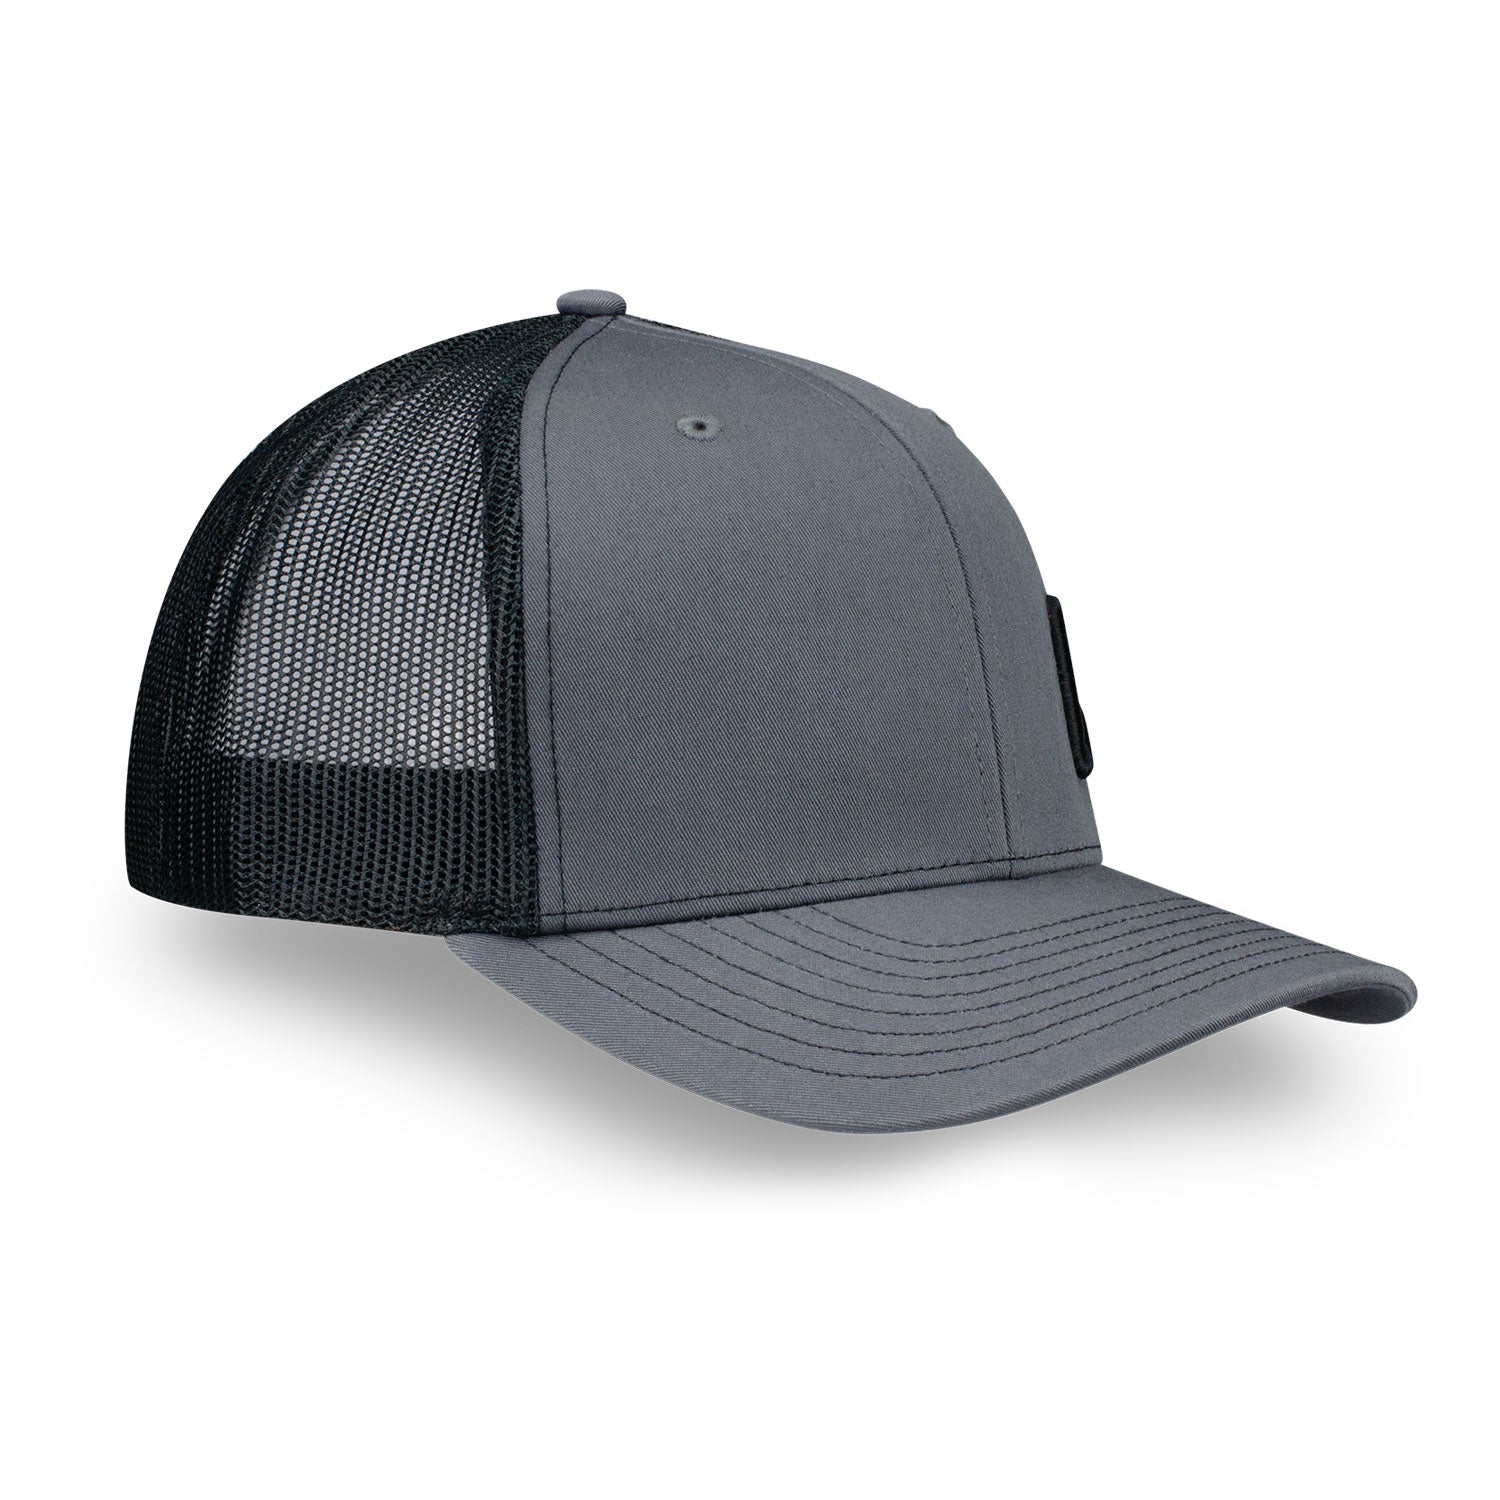 Adjustable CrossFit Monogram Trucker Hat — Charcoal